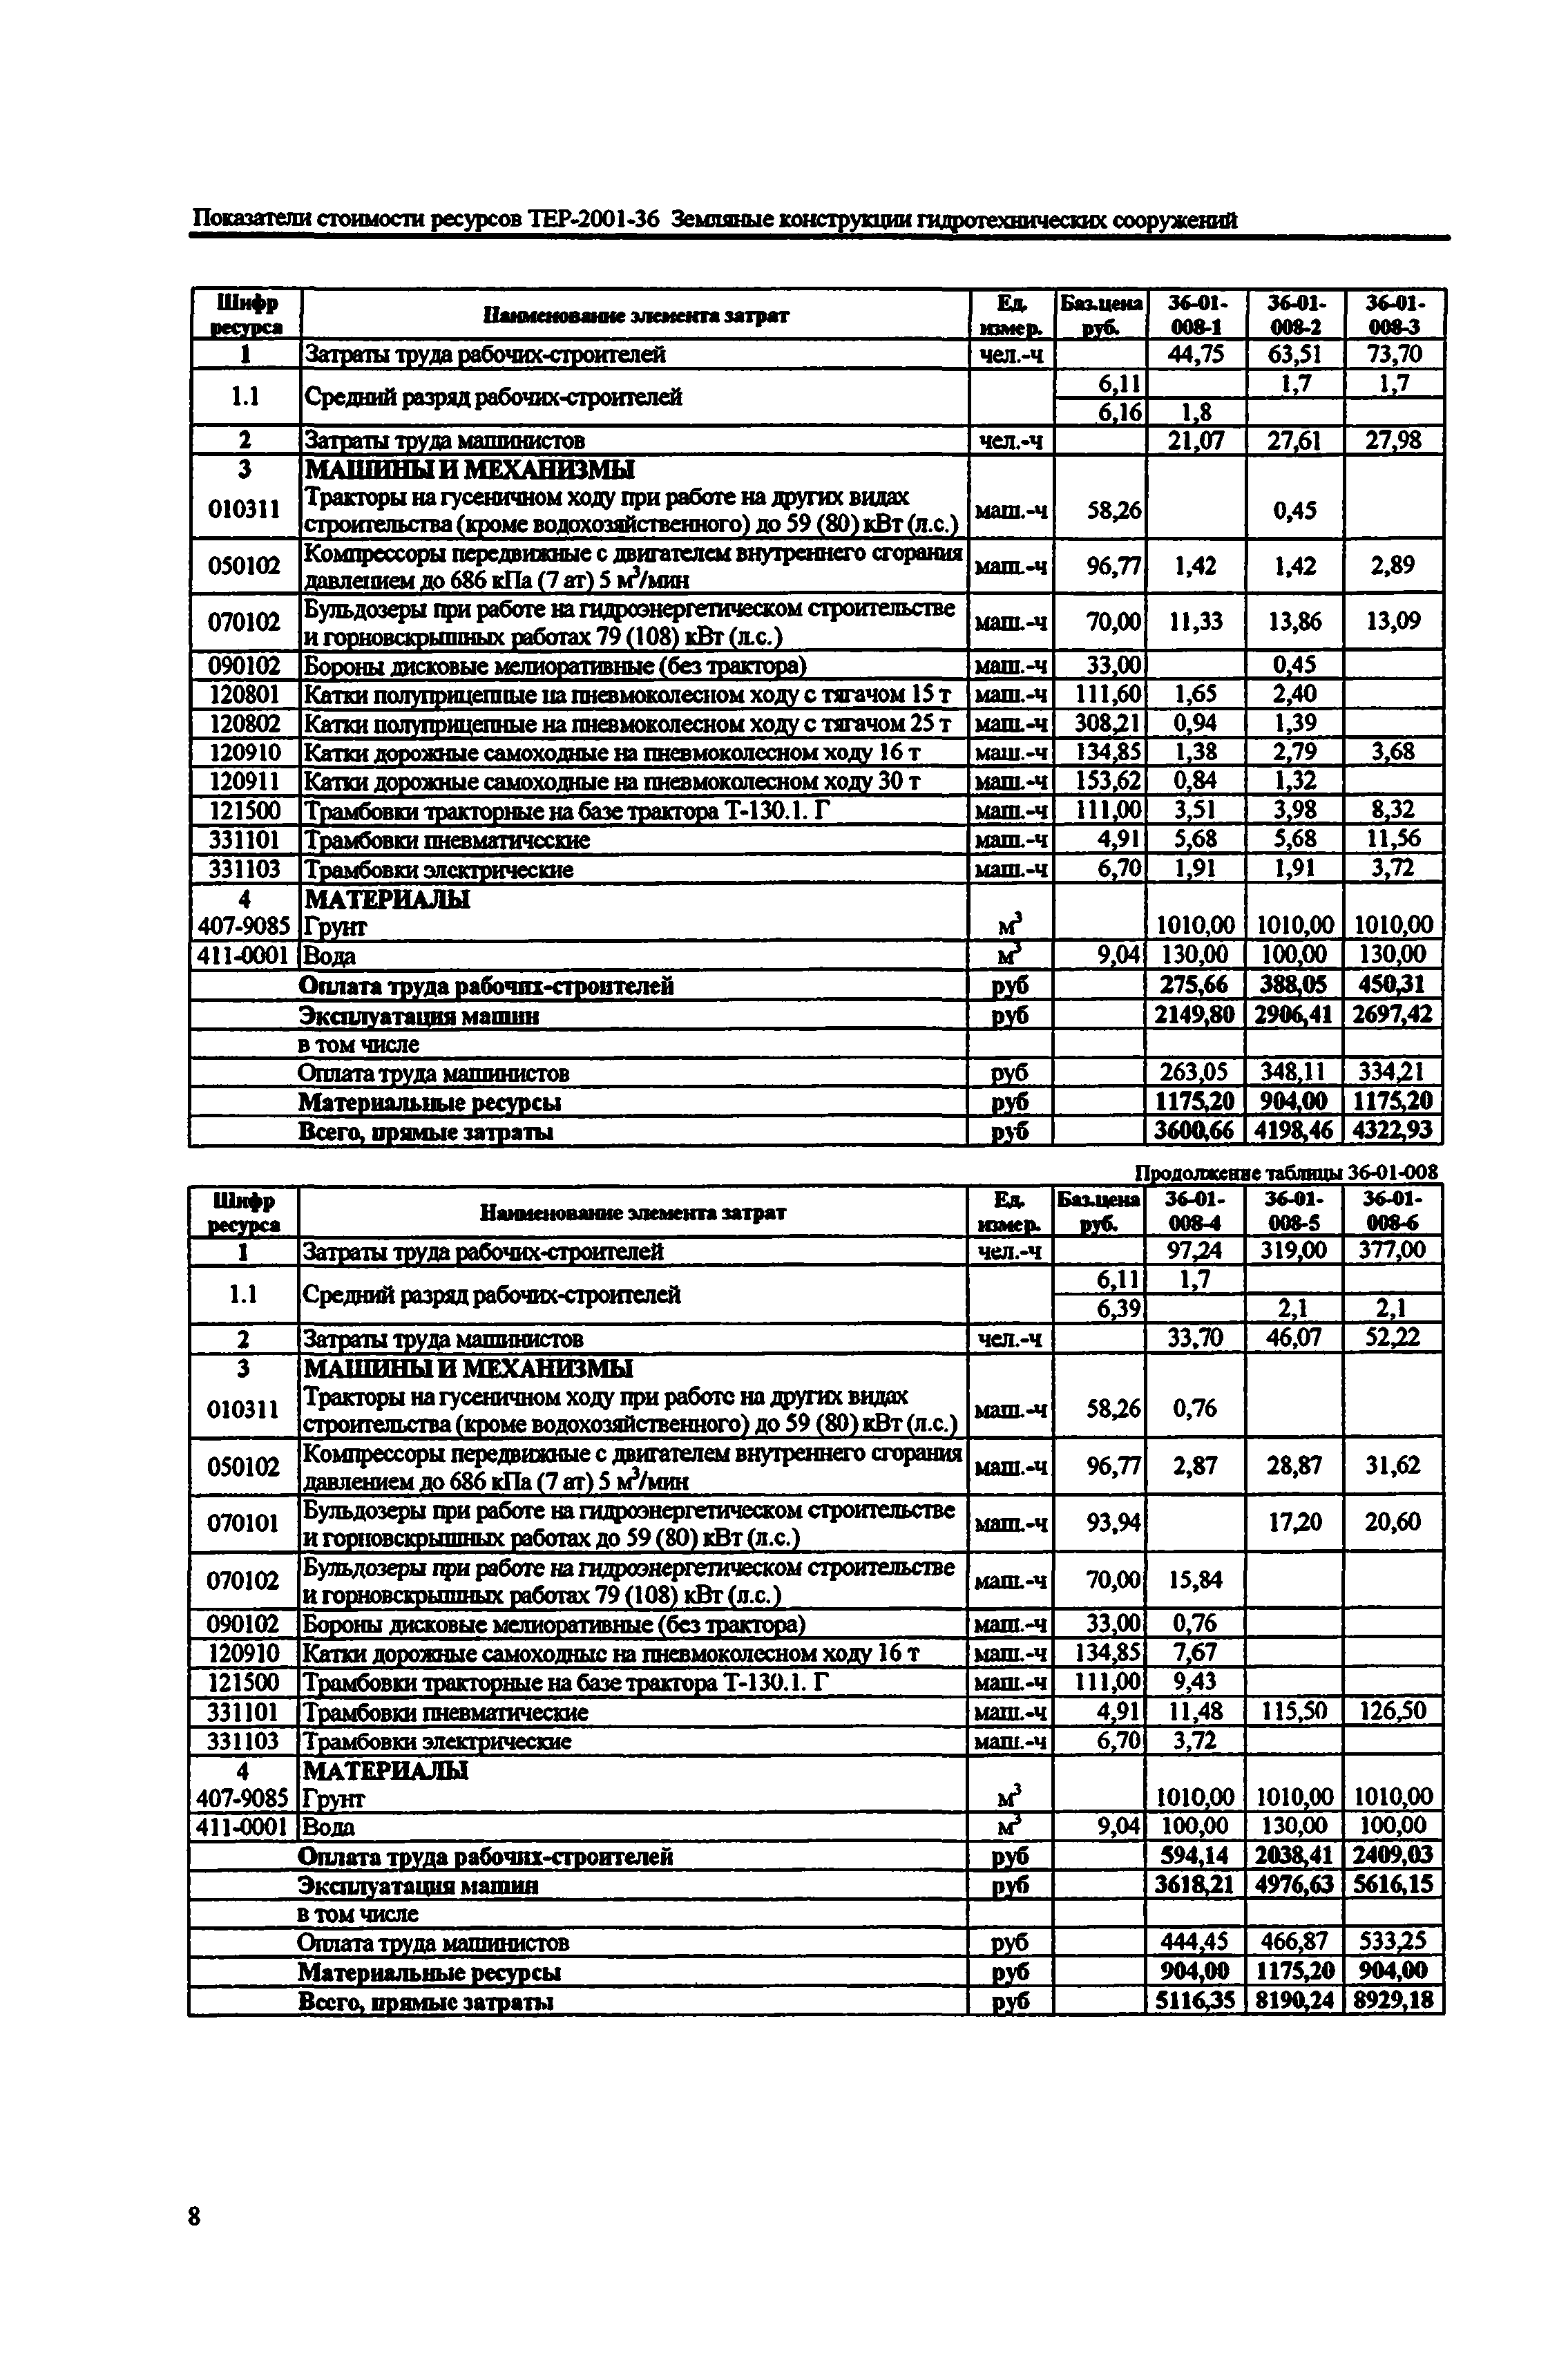 Справочное пособие к ТЕР 81-02-36-2001